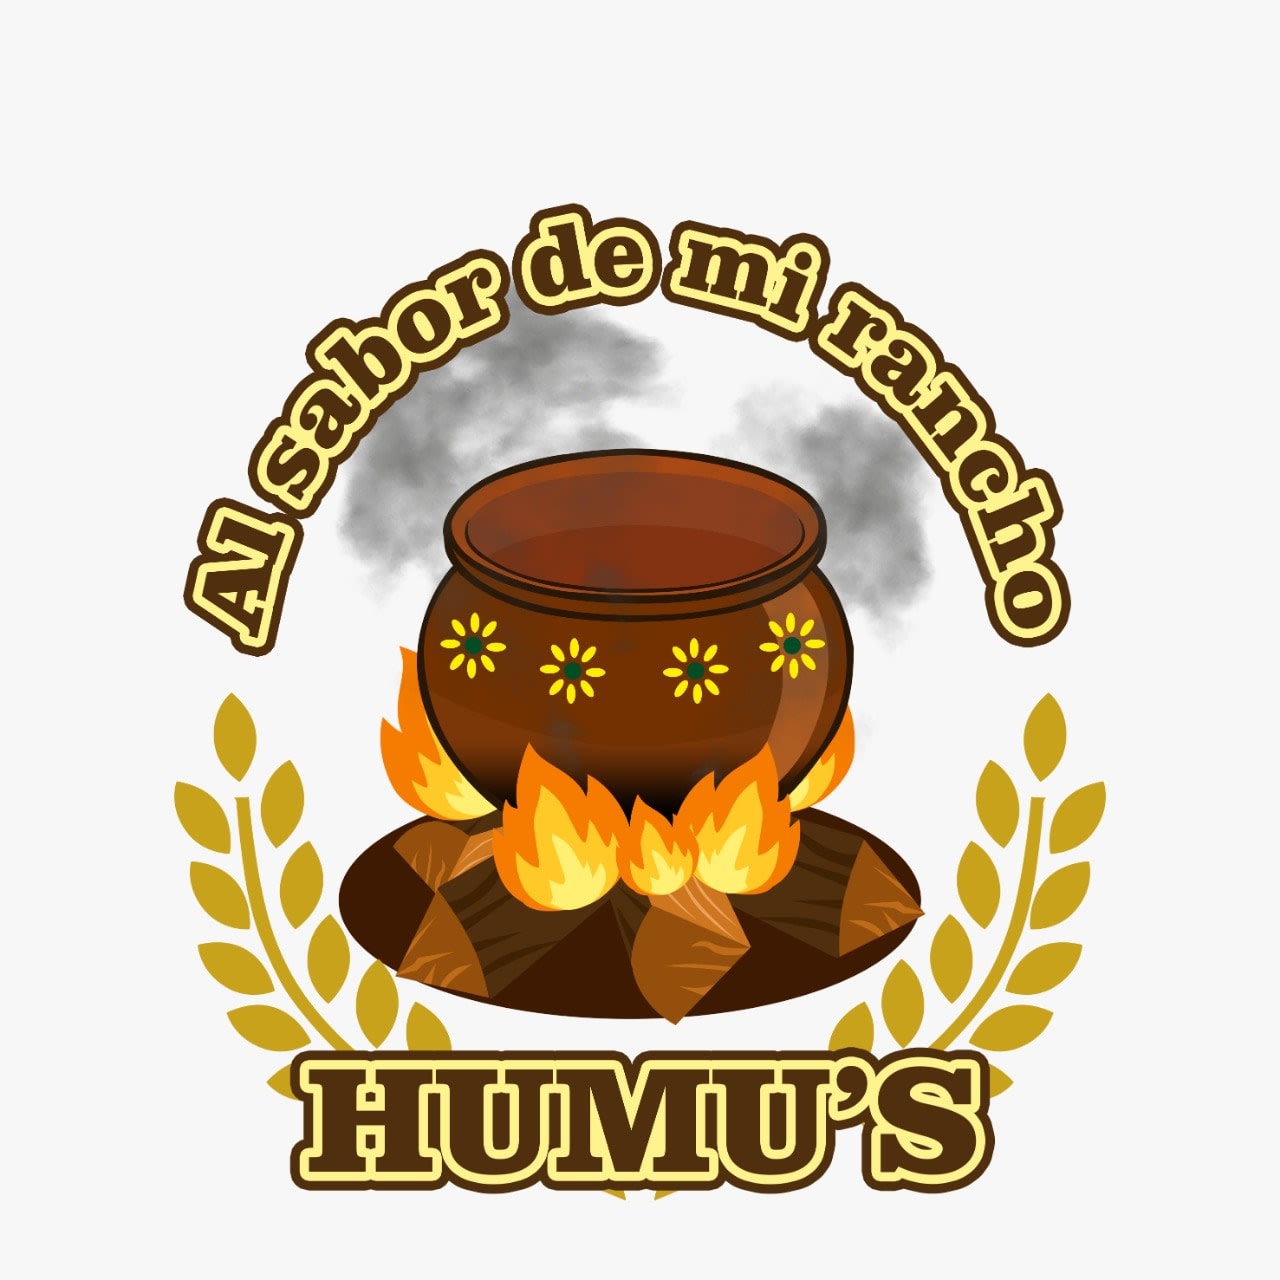 Humu's